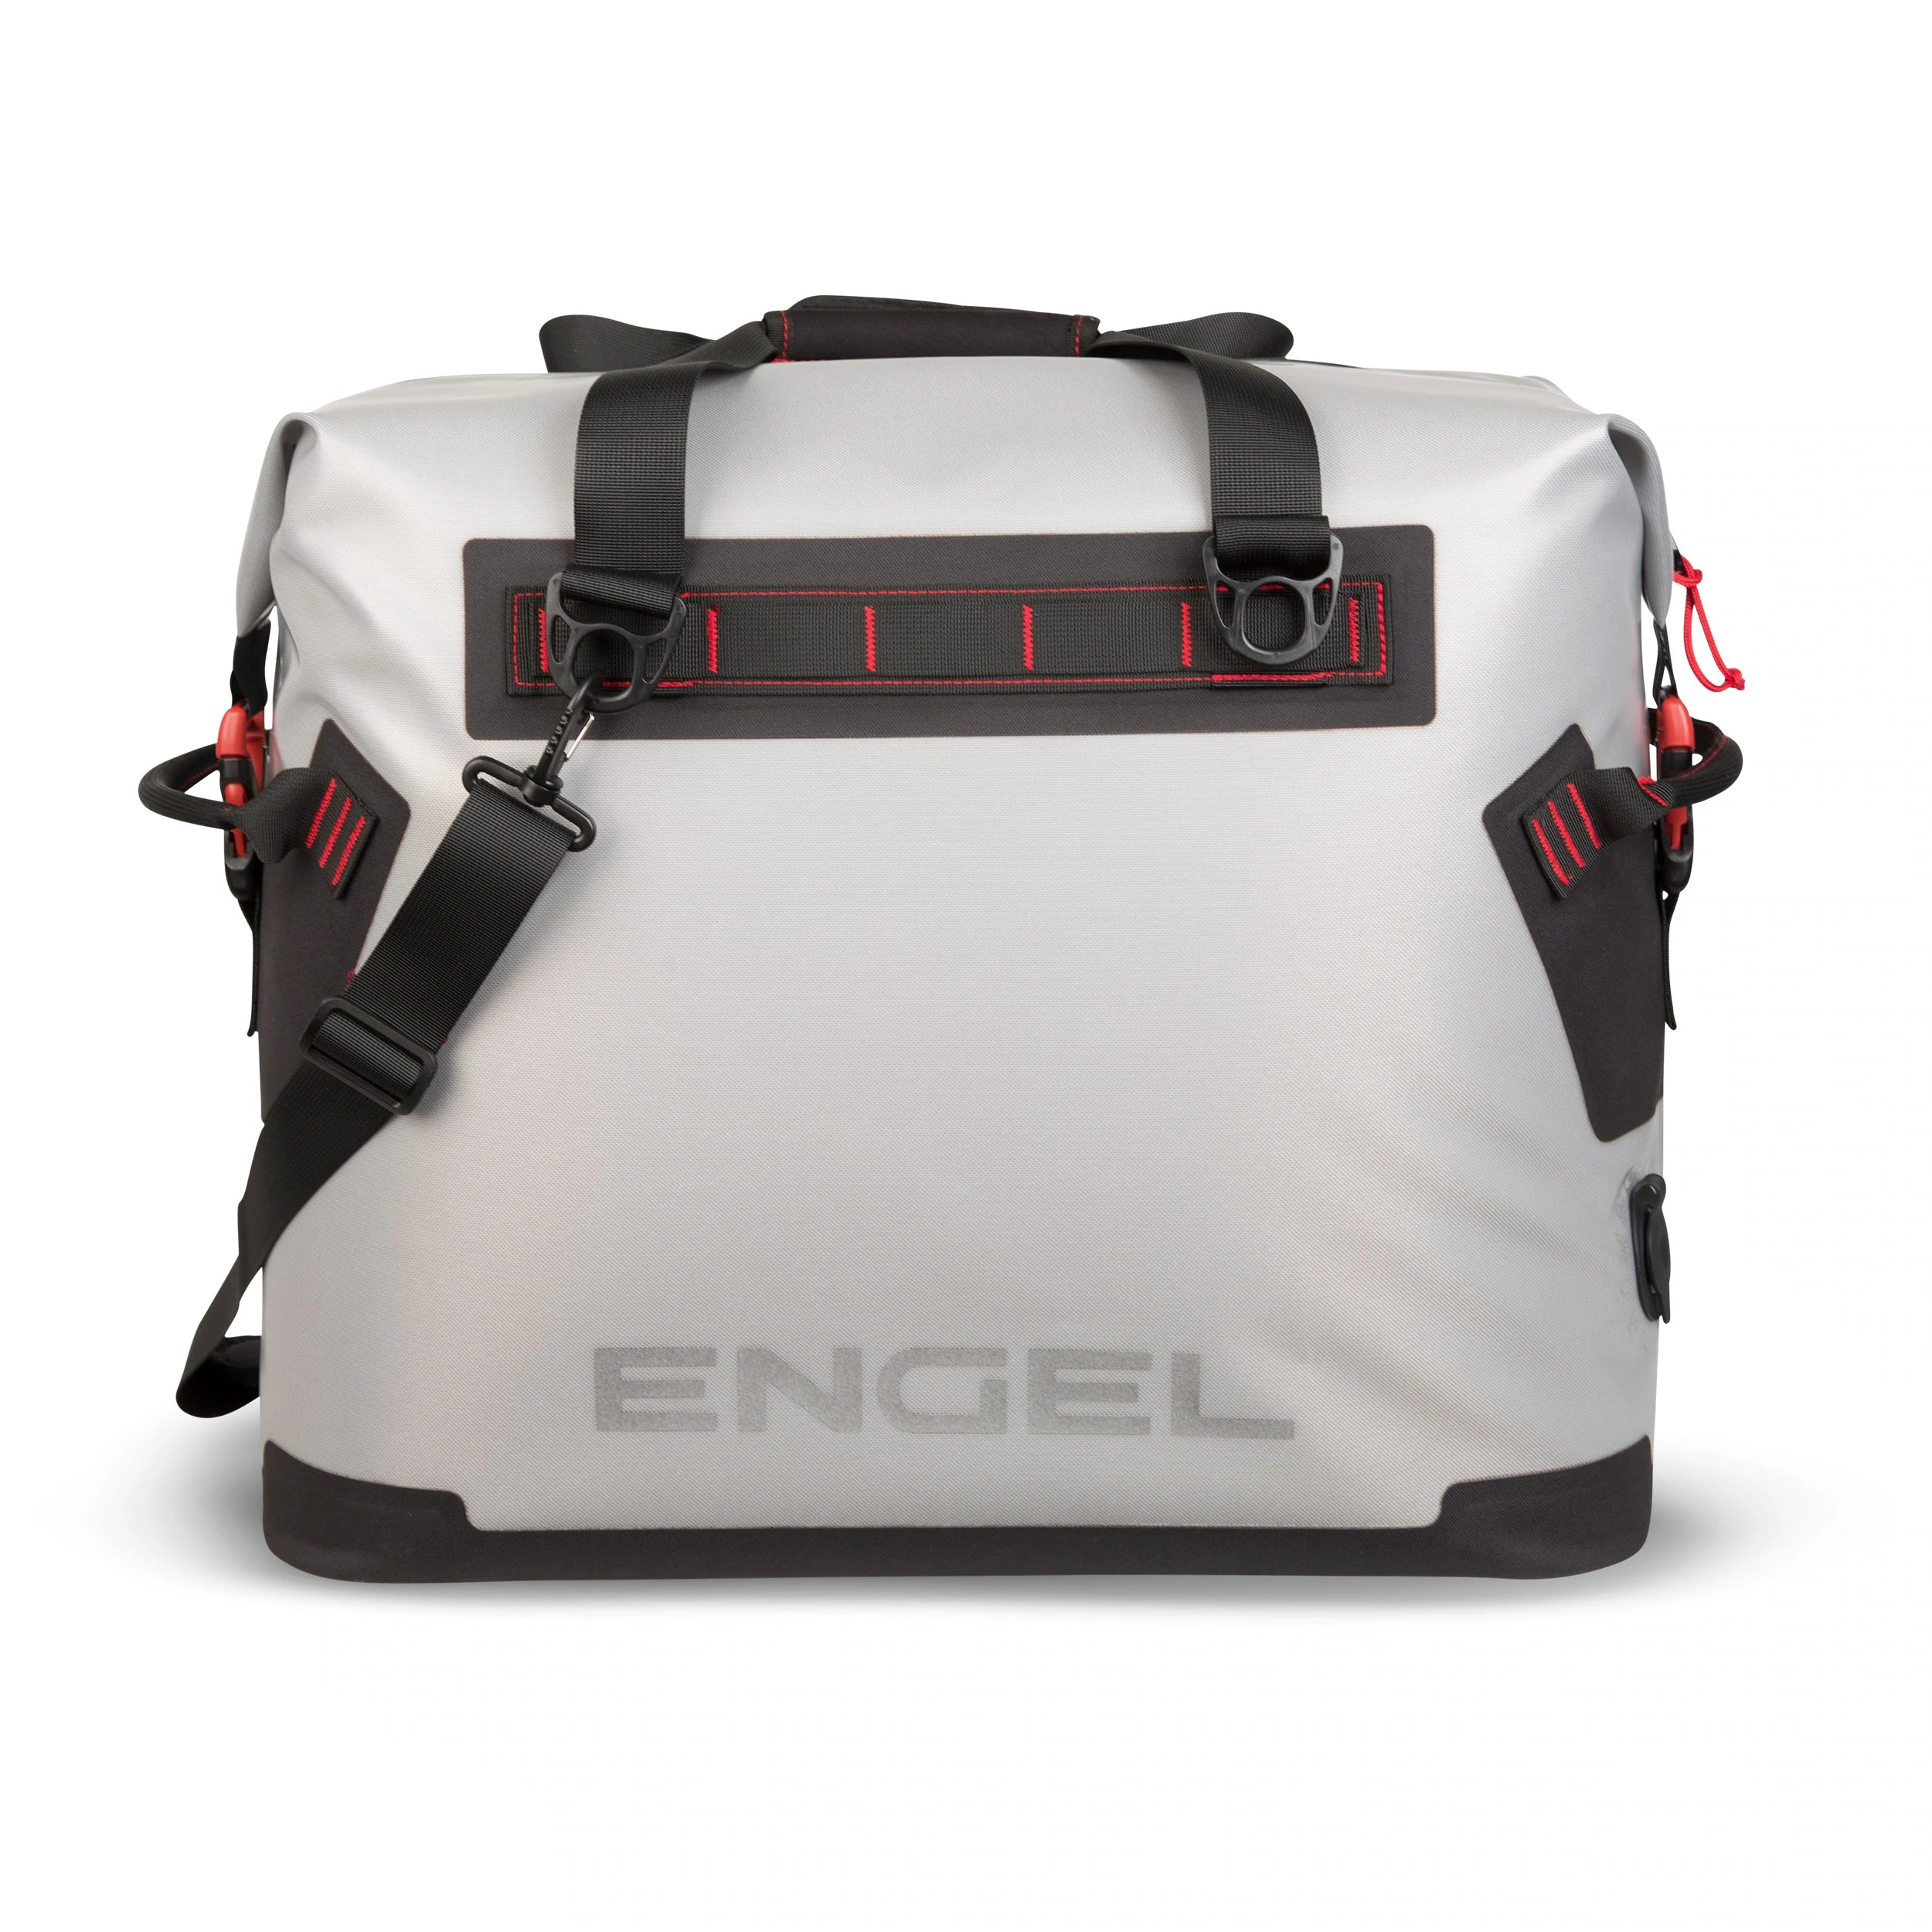 Engel 30QT Live Bait Dry Box/Cooler w/ Rod Holders